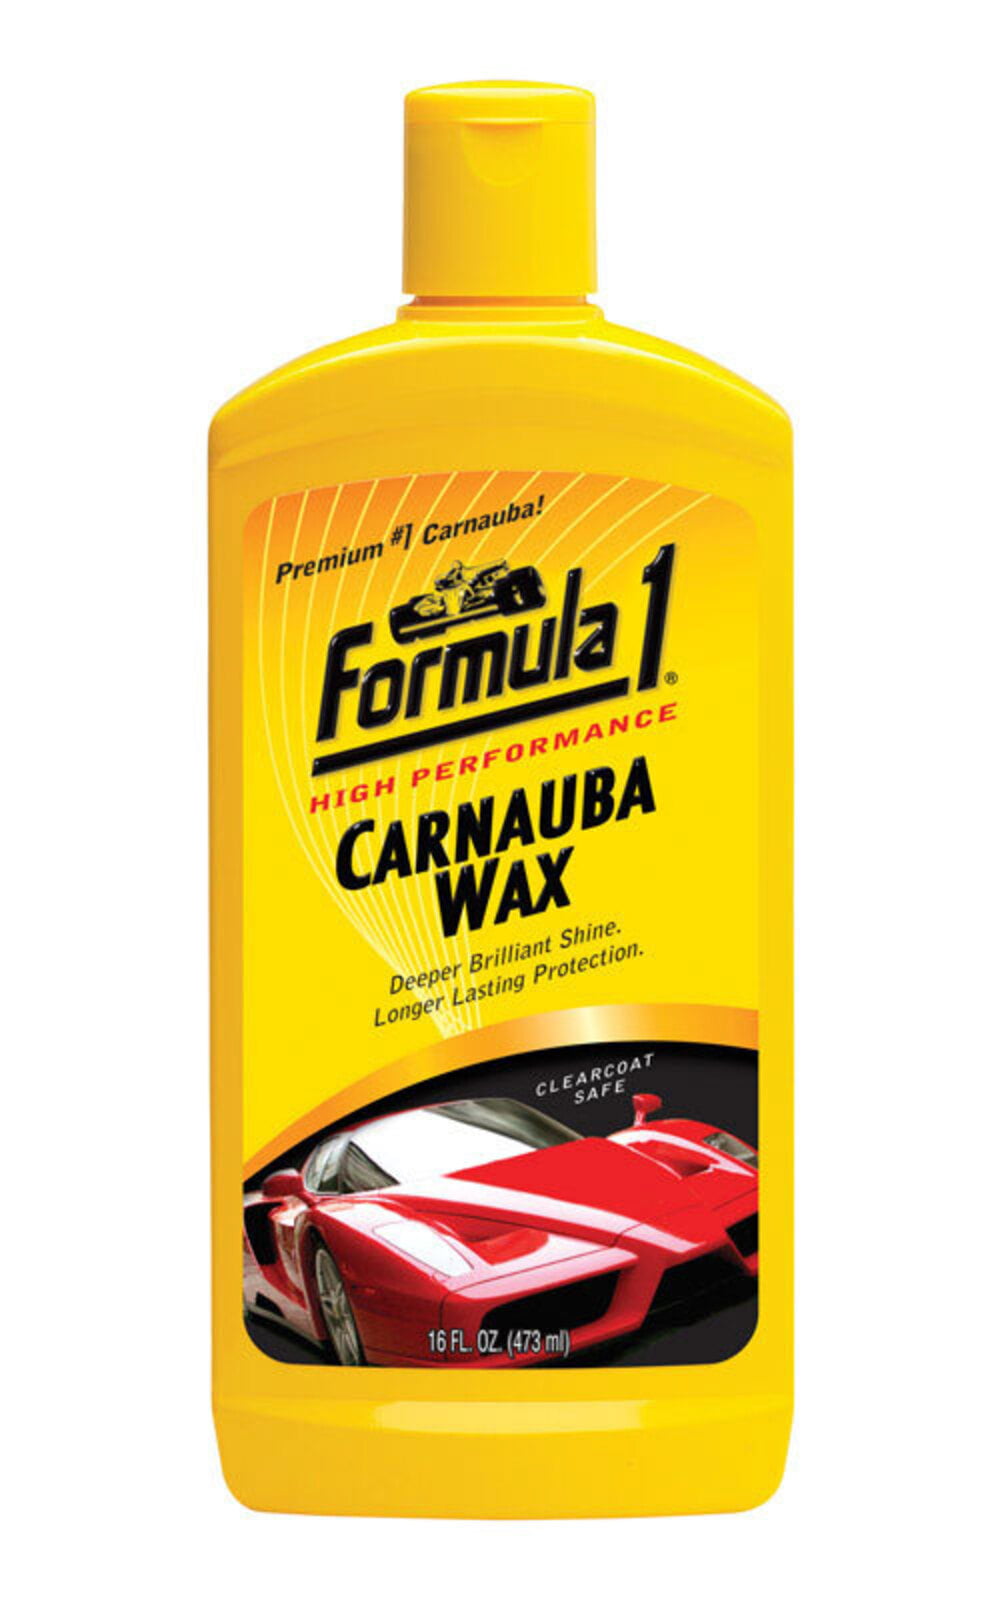 Formula 1 Carnauba Paste Wax Wax: #1 Brazilian Carnauba, Advanced